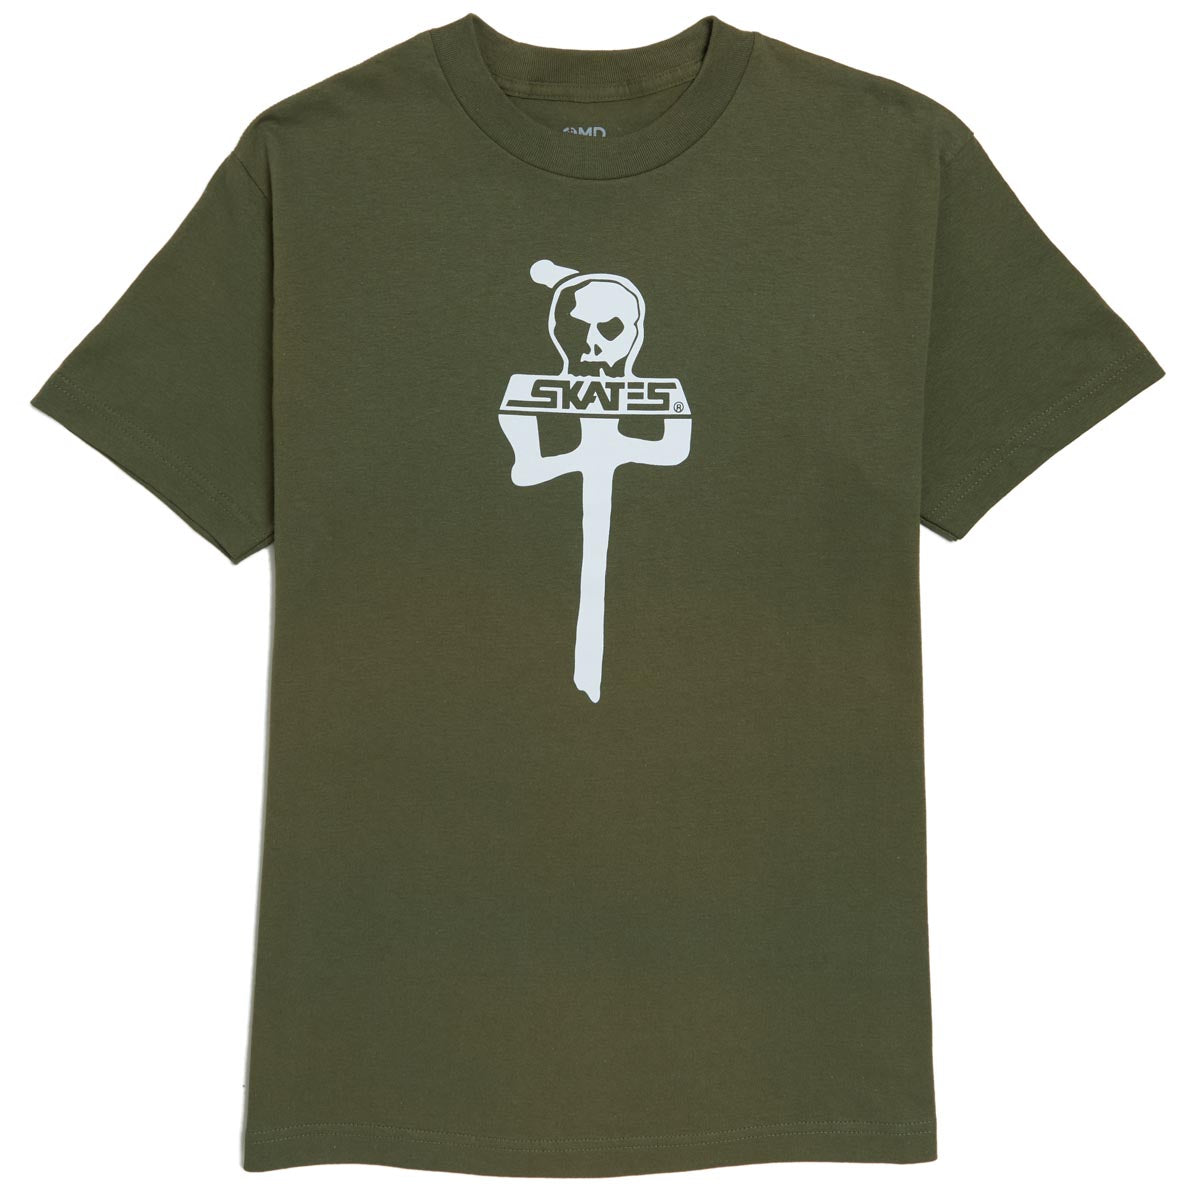 RDS x Skull Skates T-Shirt - Olive/White image 1